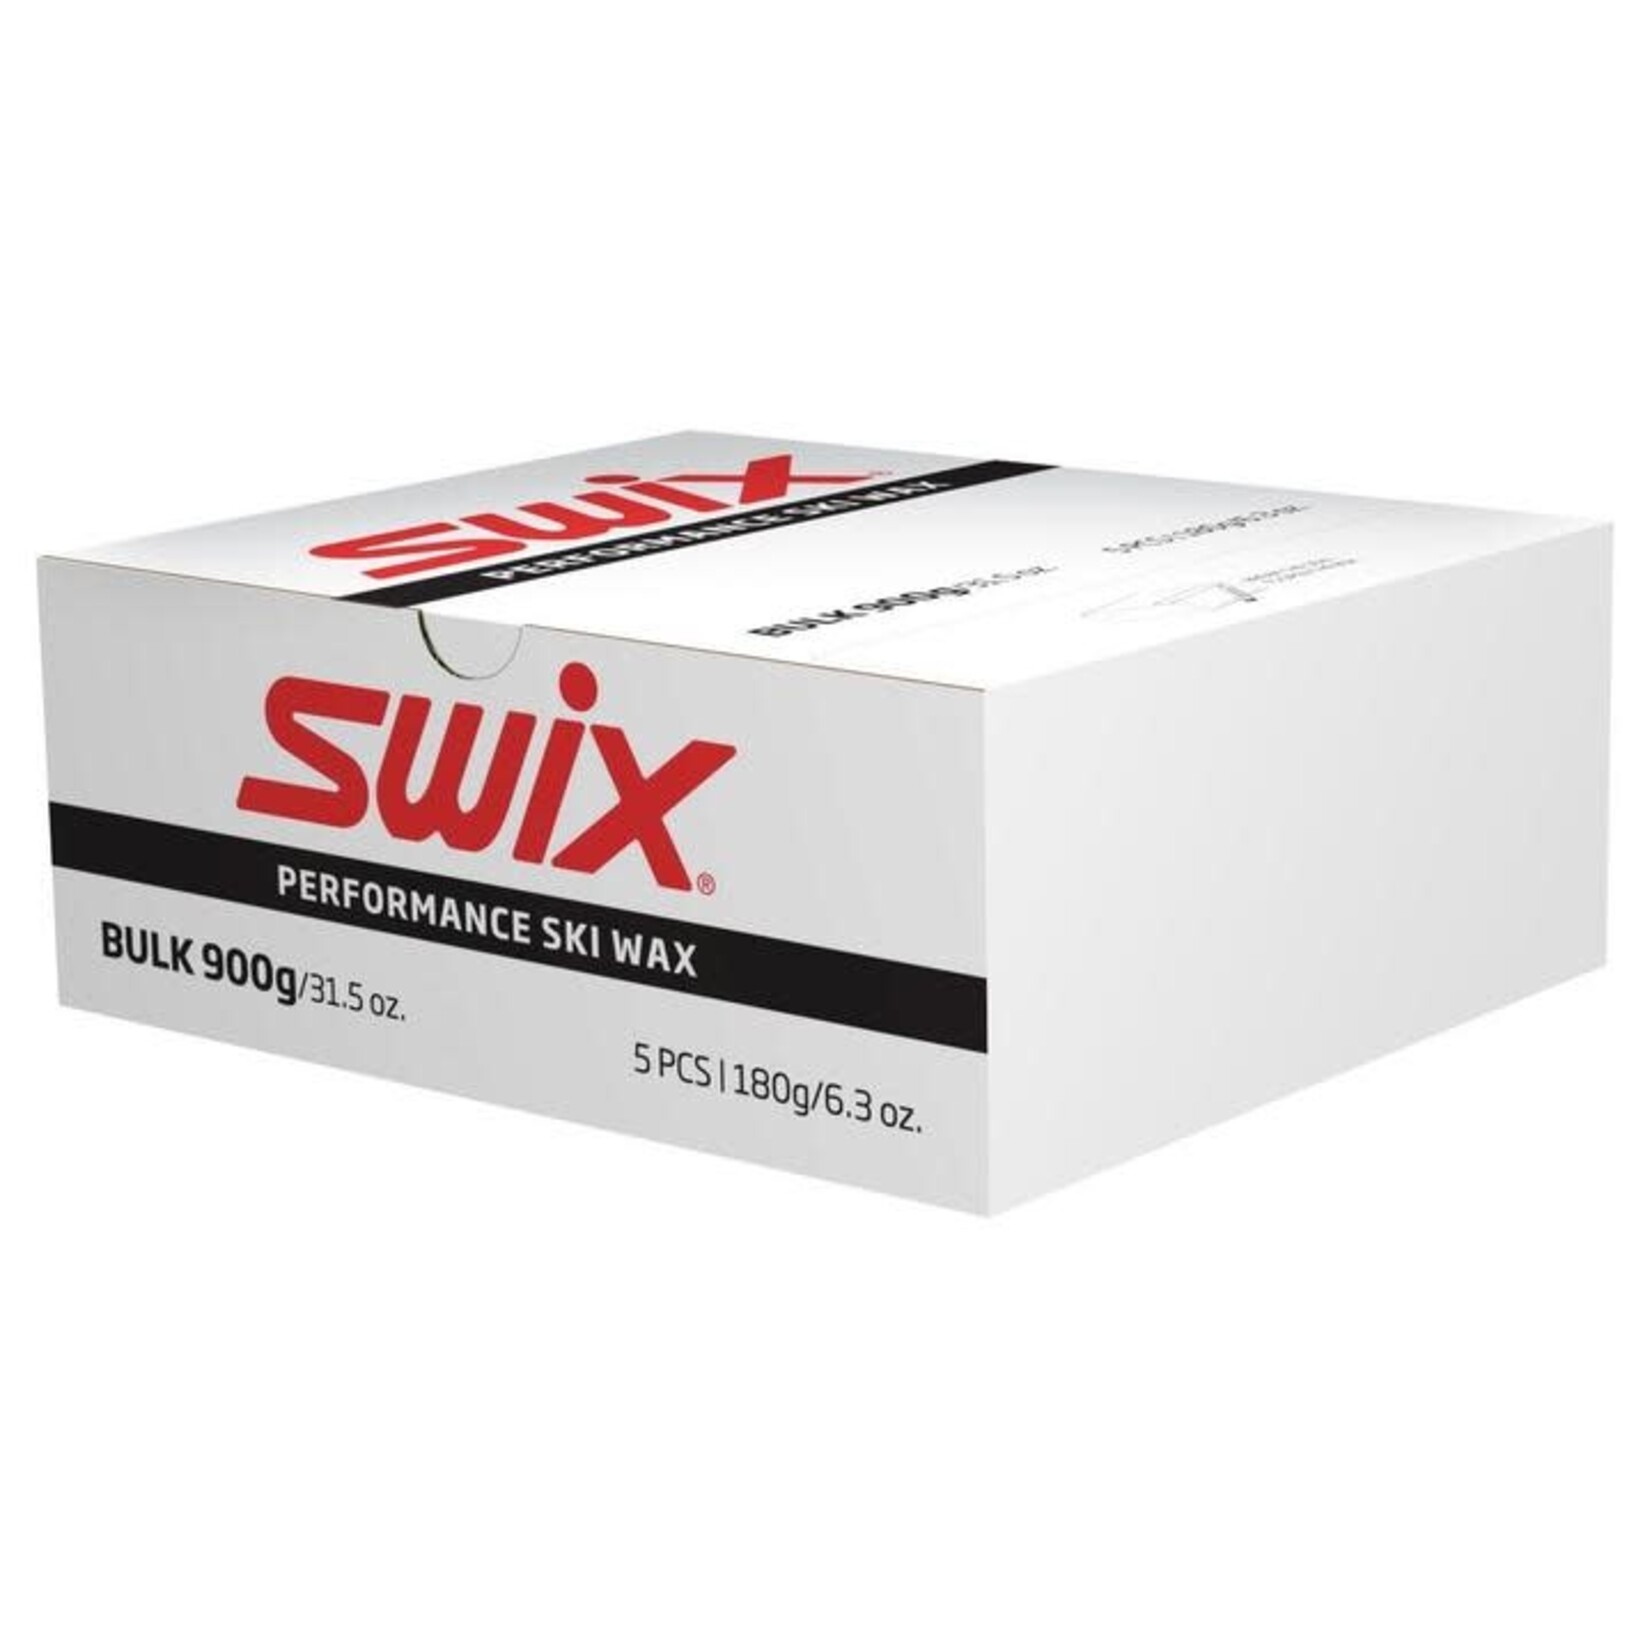 Swix Fart de glisse Pro Speed PS5 -10/-18